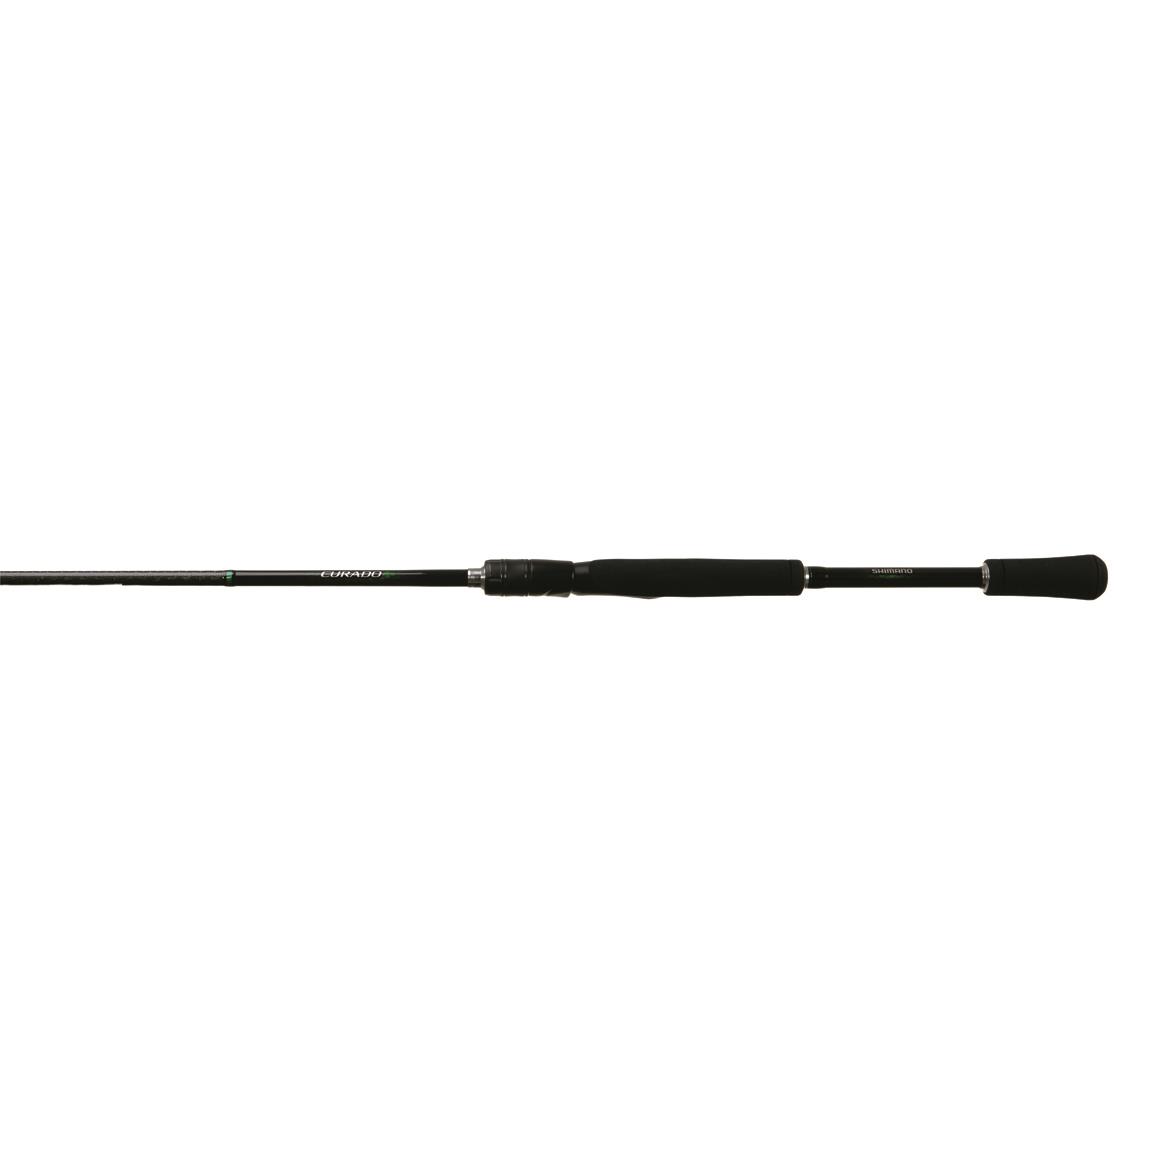 Shimano Curado Spinning Rod, 7'2" Length, Medium Heavy Power, Fast Action